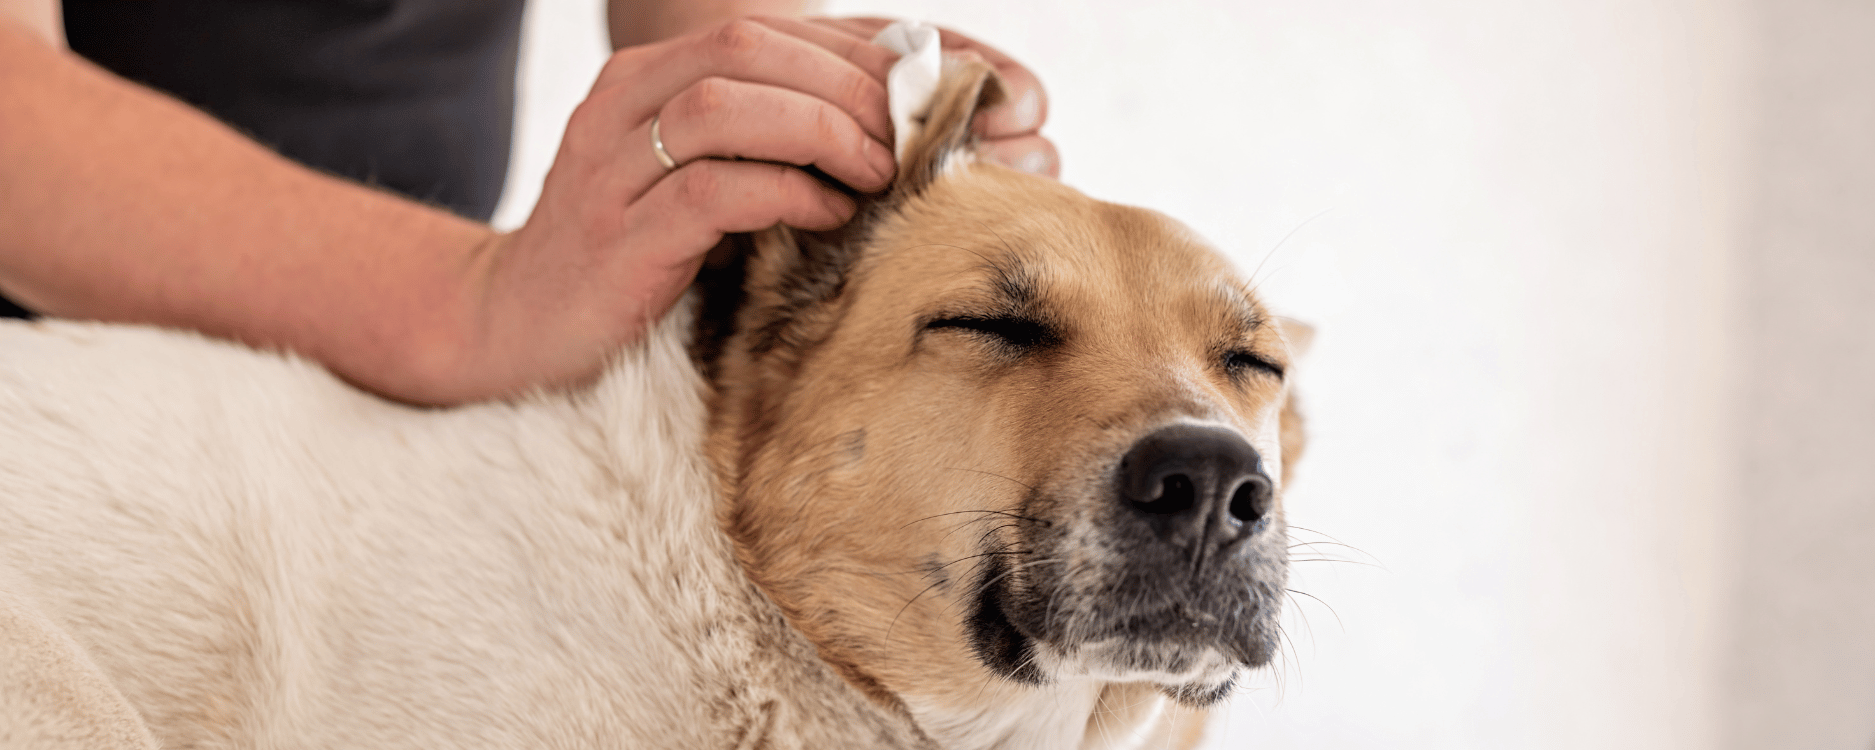 Ein Hund, dem das Ohr gesäubert wird